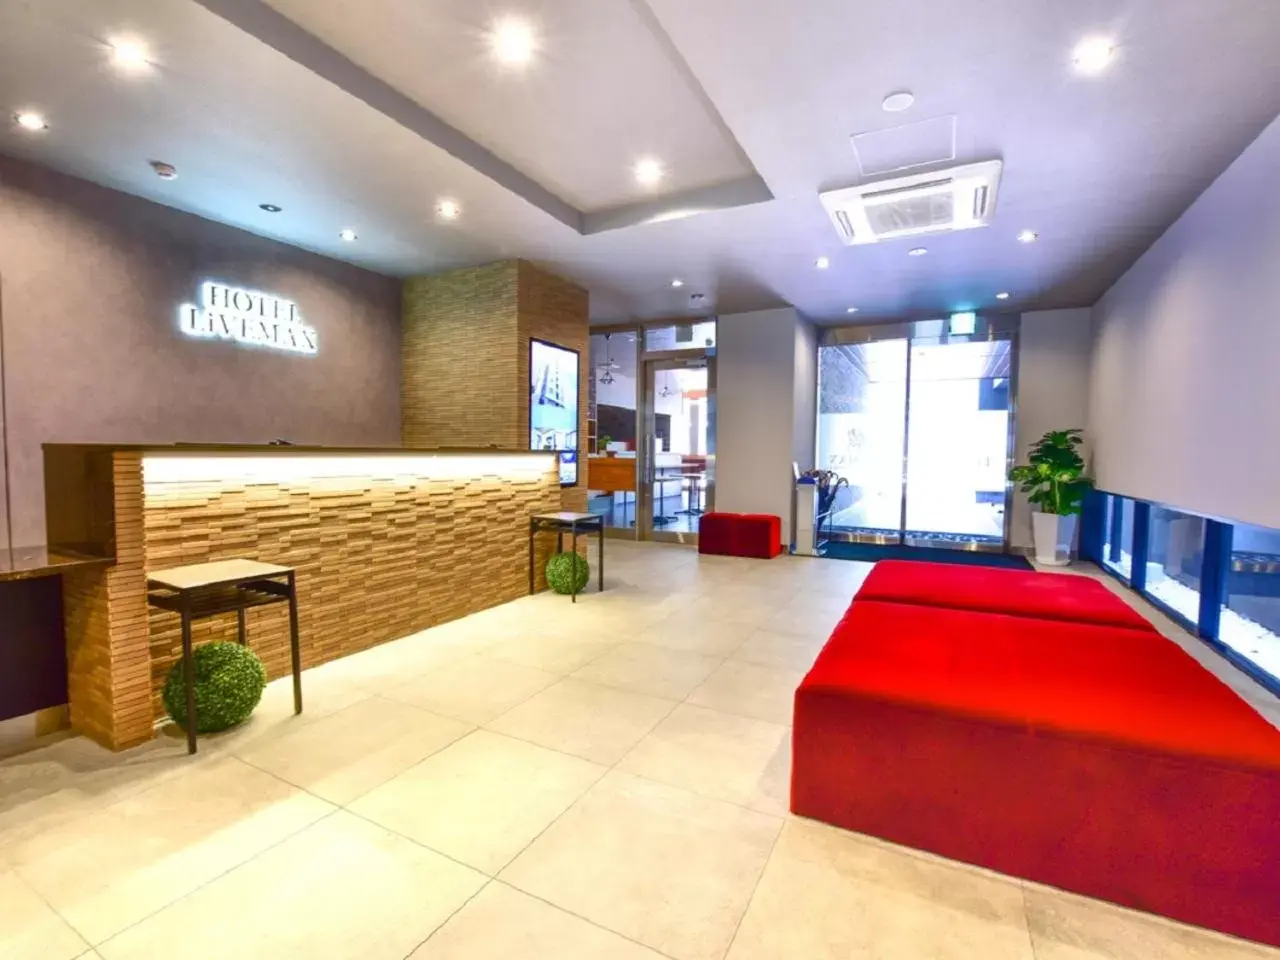 Lobby or reception, Lobby/Reception in HOTEL LiVEMAX Fukuoka Tenjin West